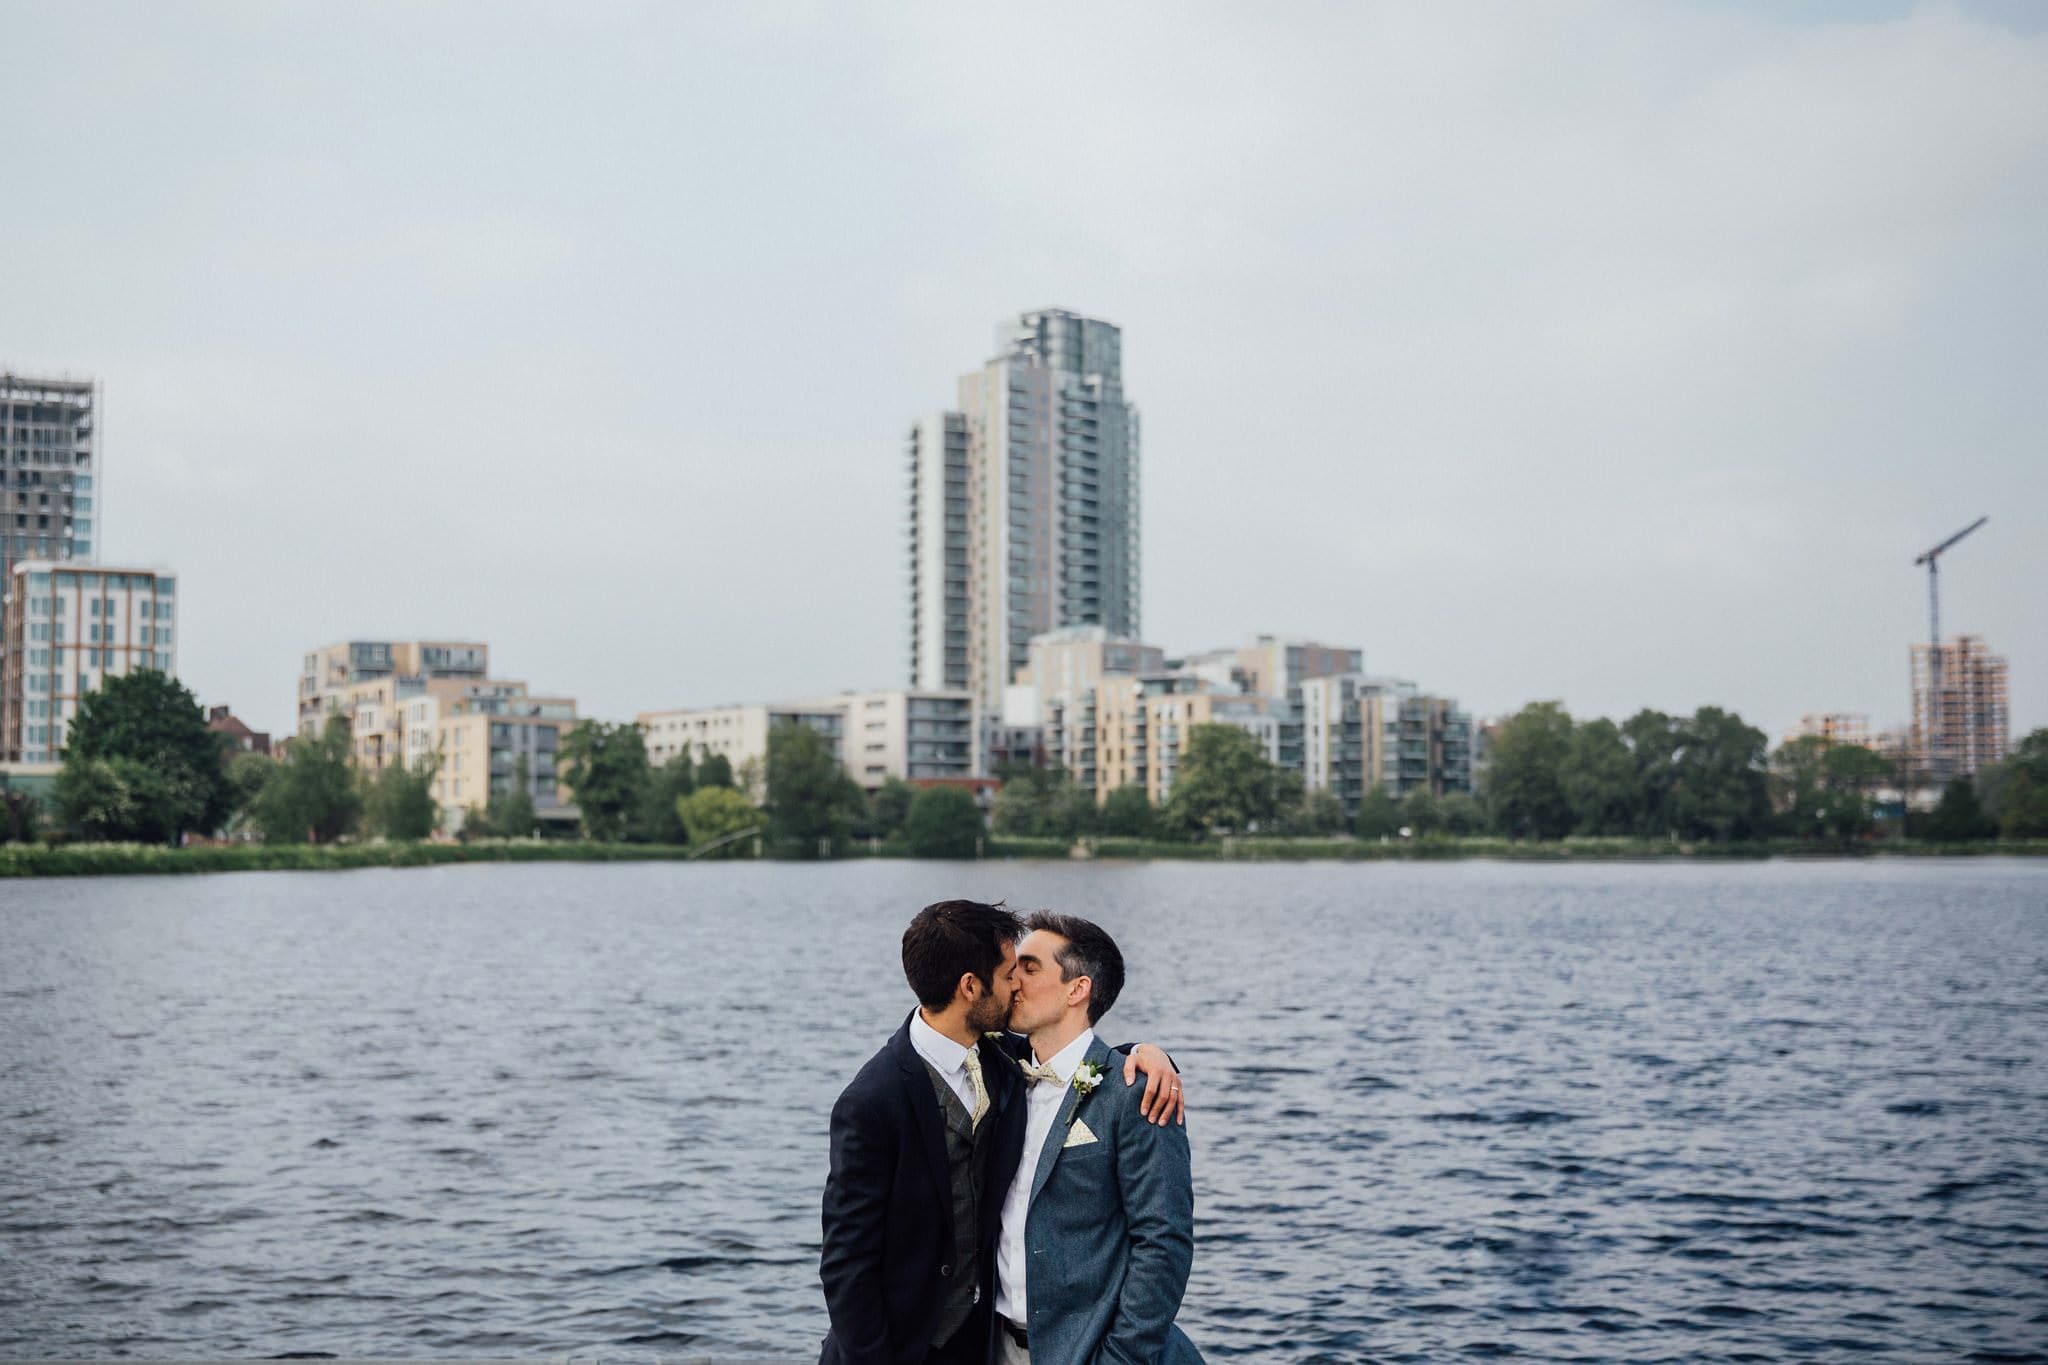 stoke newington west reservoir centre wedding couple kissing